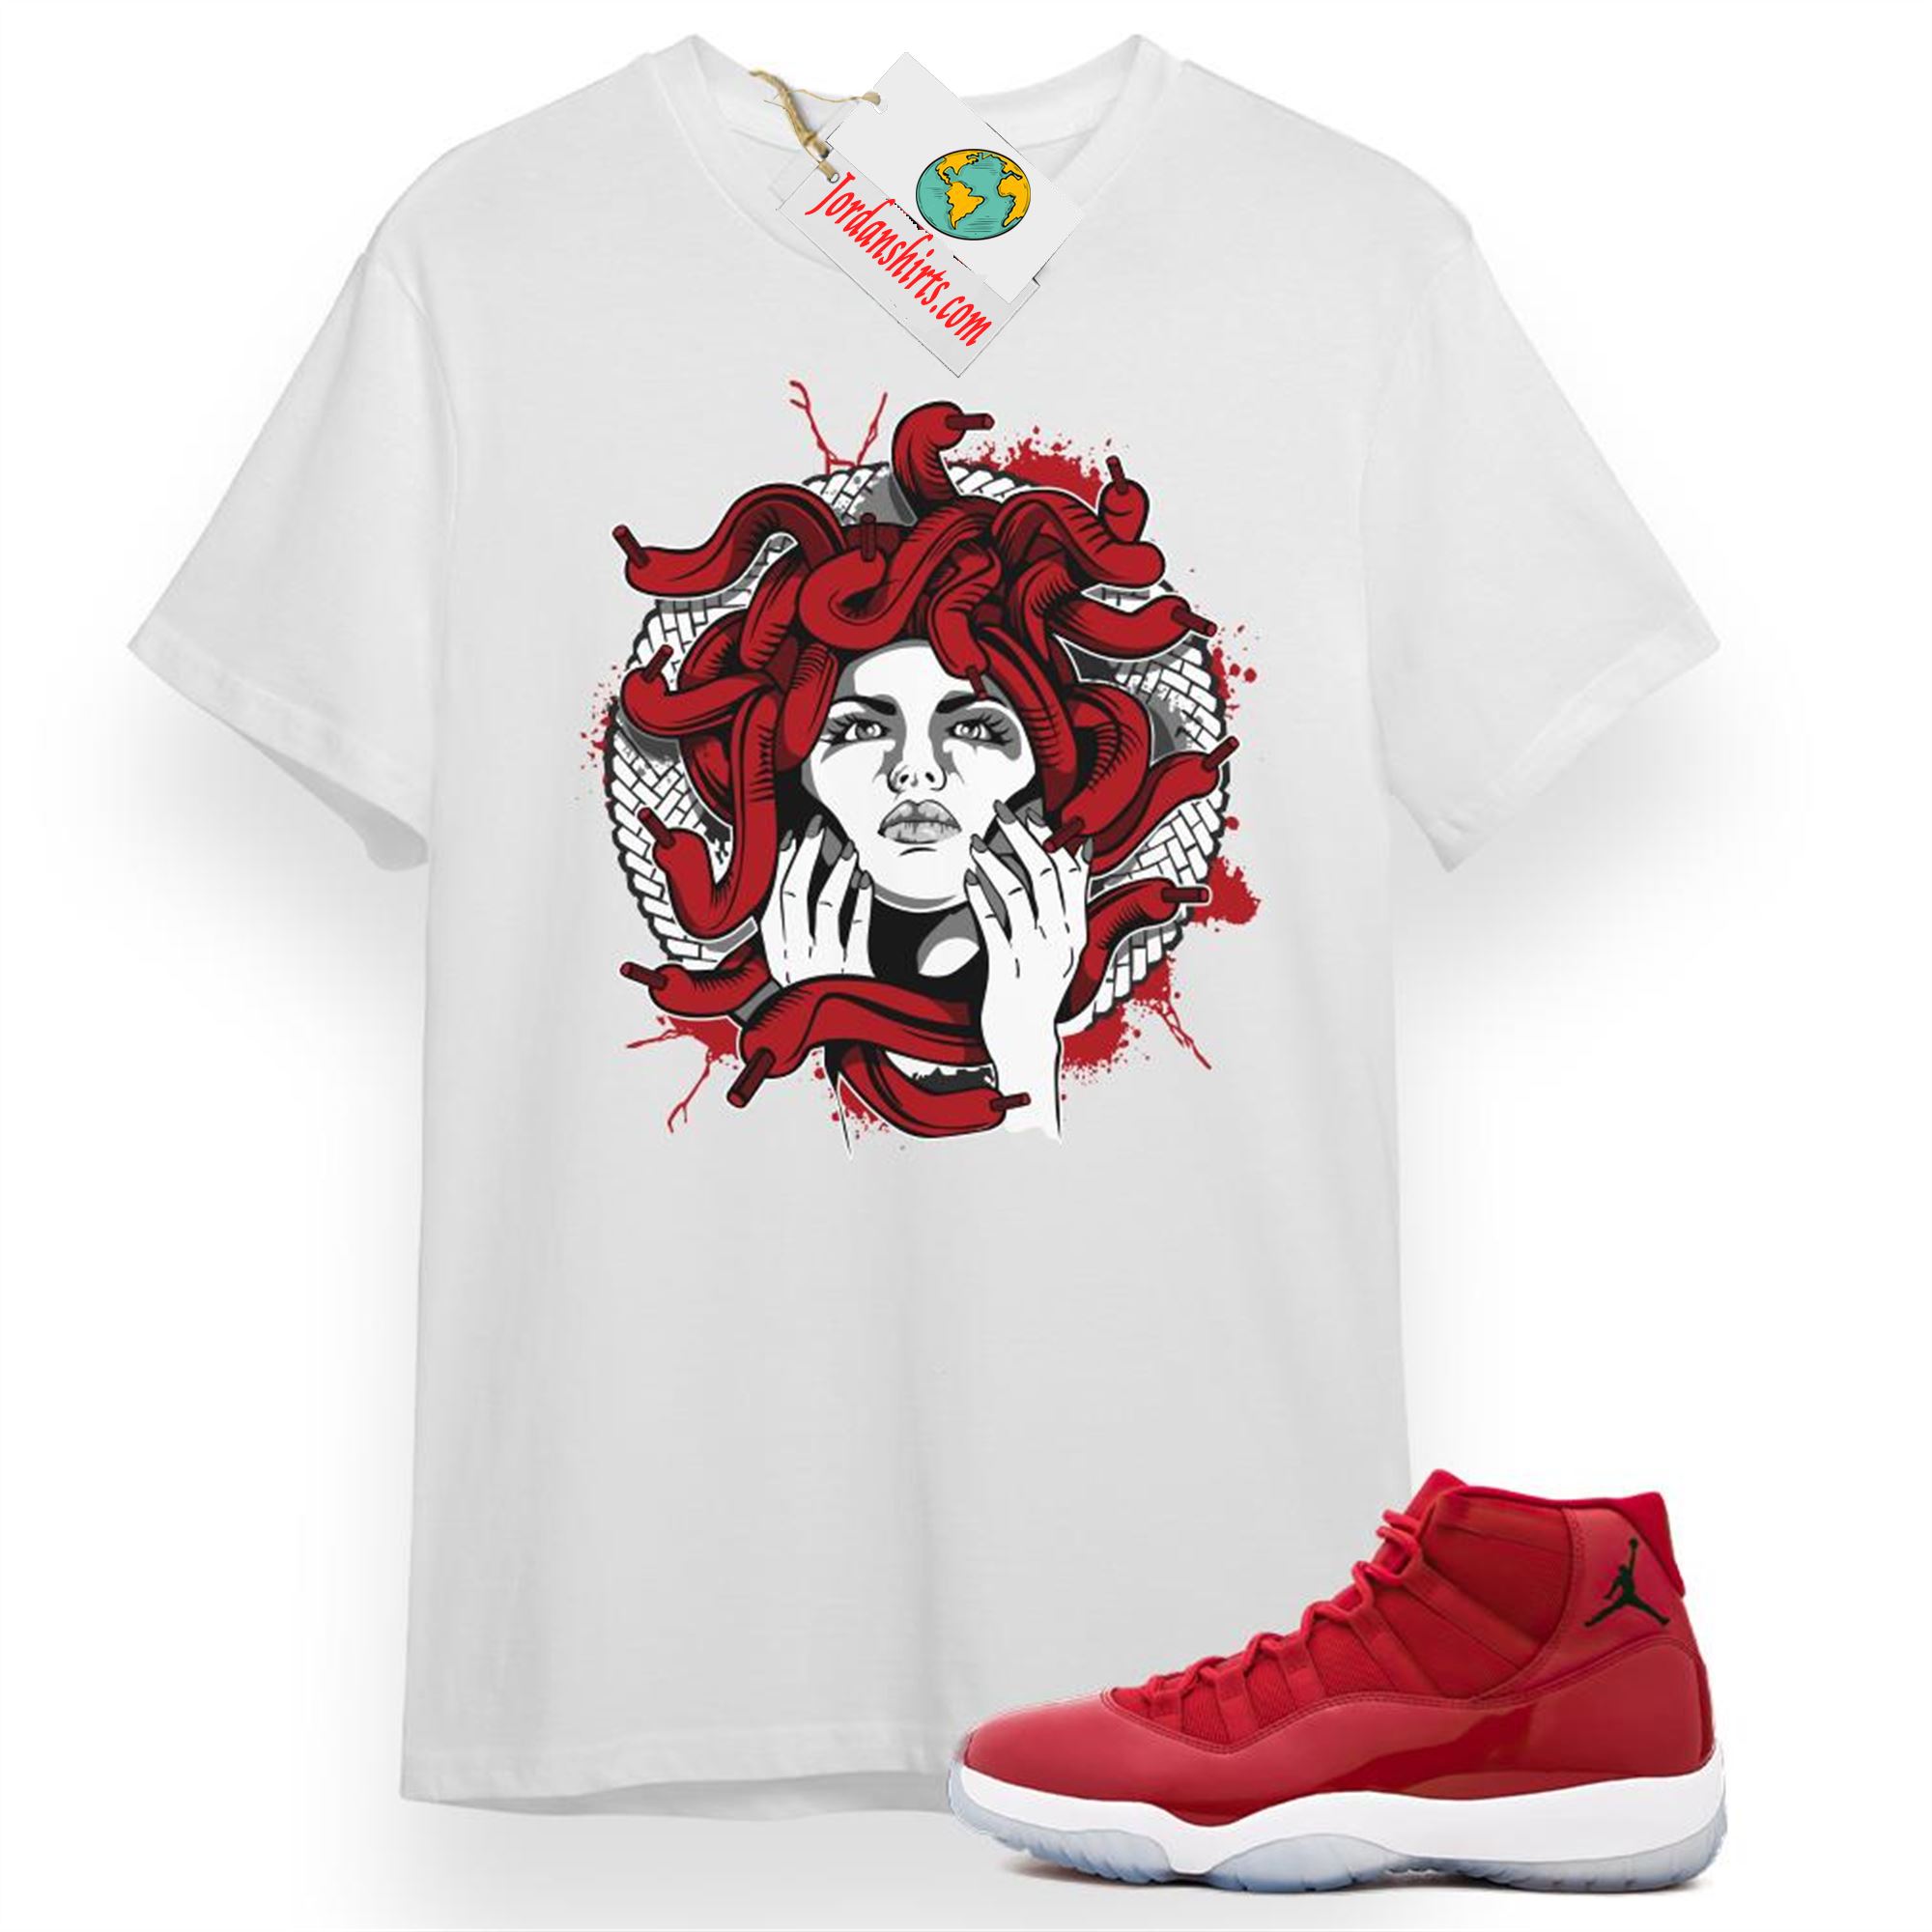 Jordan 11 Shirt, Medusa White T-shirt Air Jordan 11 Win Like 96 11s Plus Size Up To 5xl